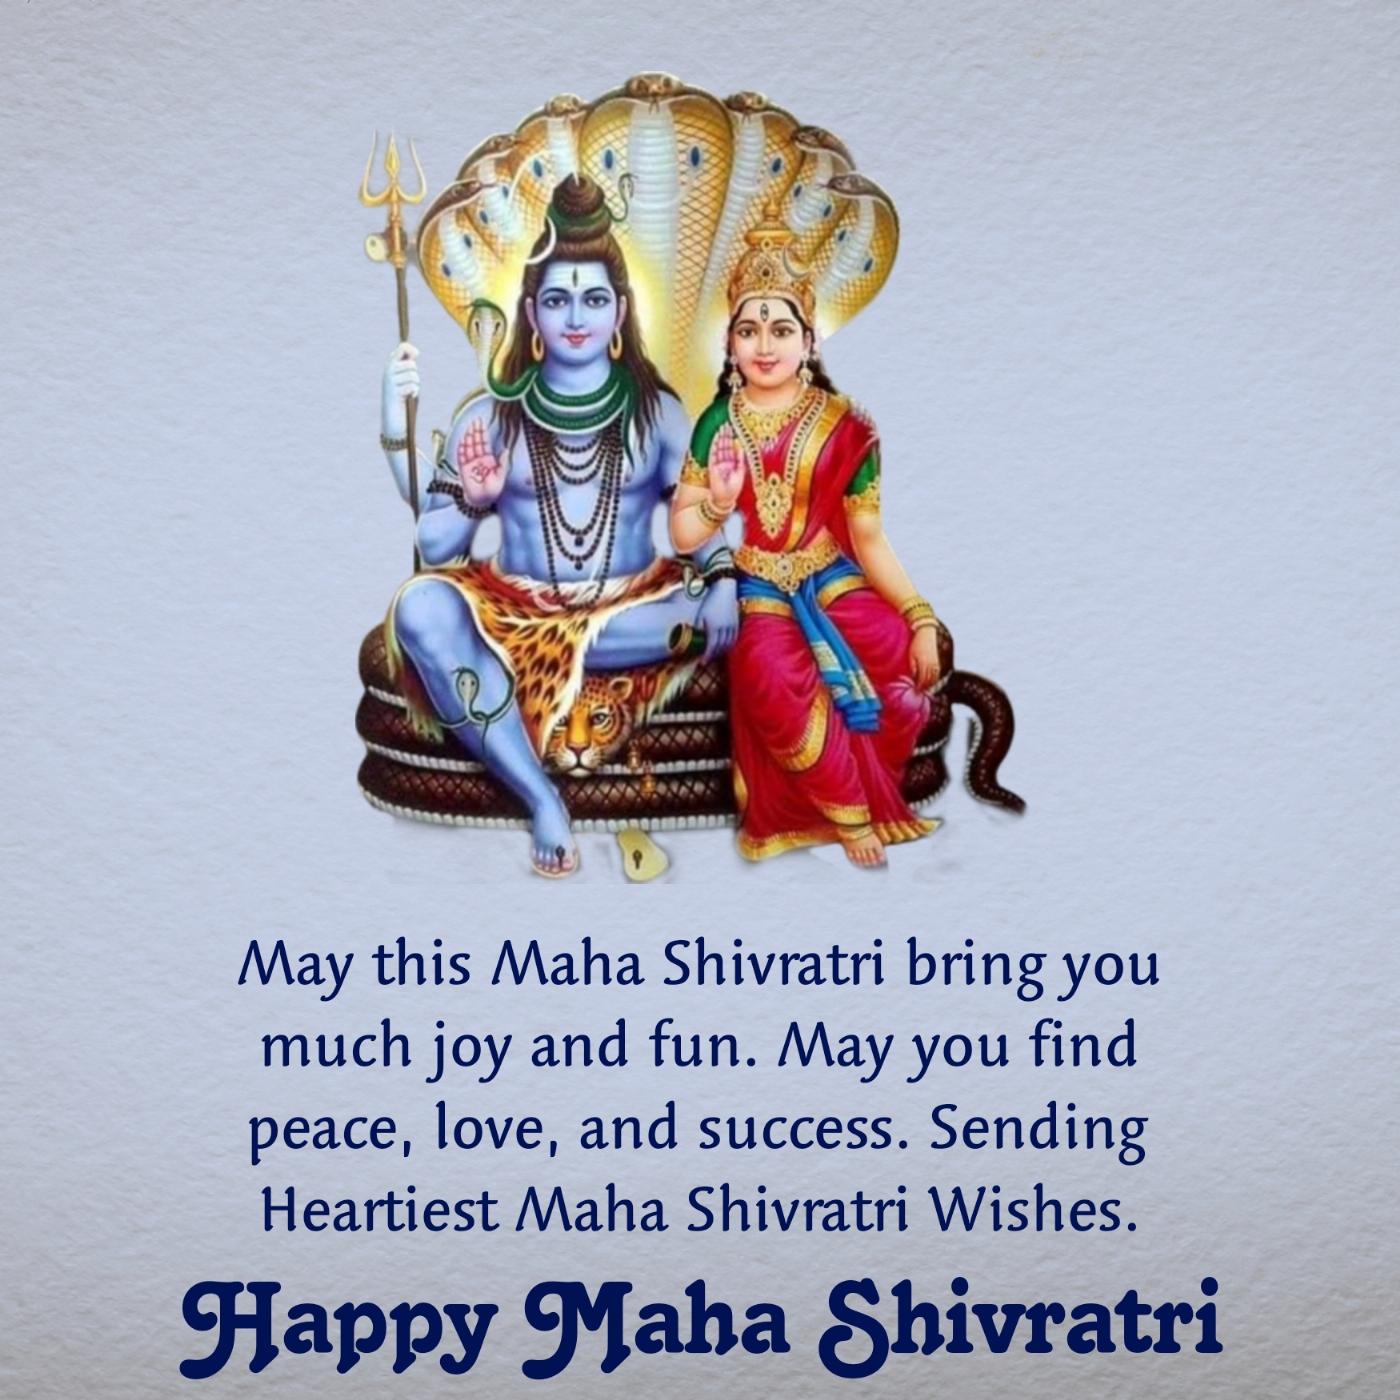 May this Maha Shivratri bring you much joy and fun